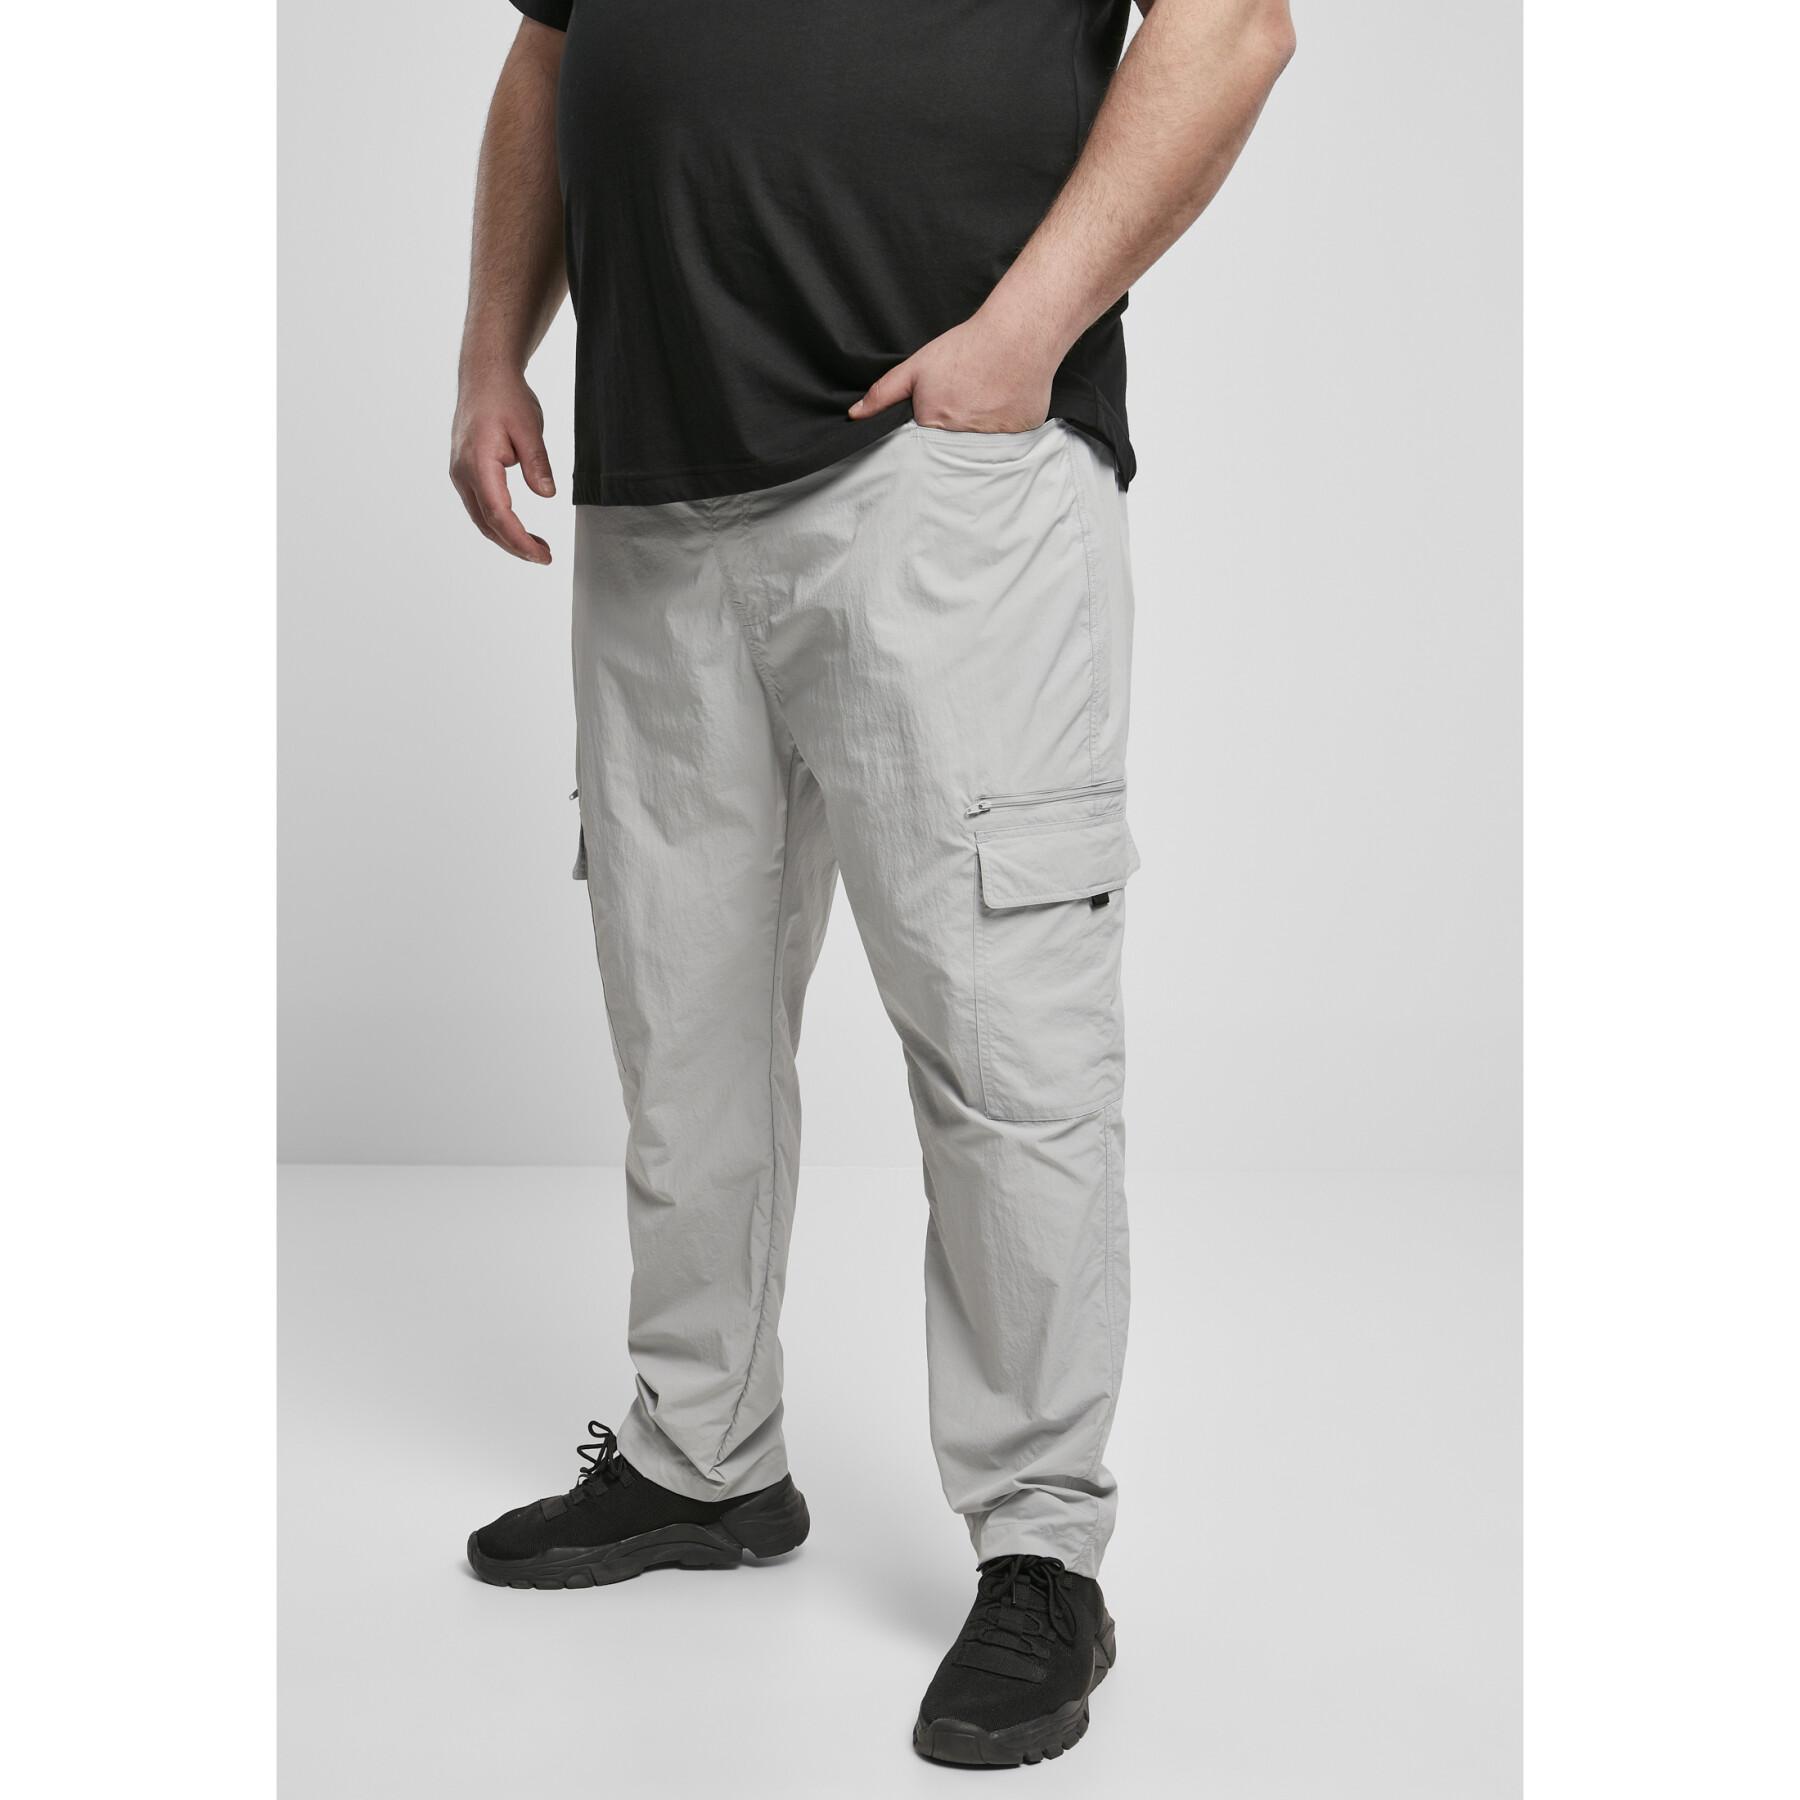 Cargo Pants Urban Classics adjustable nylon large sizes